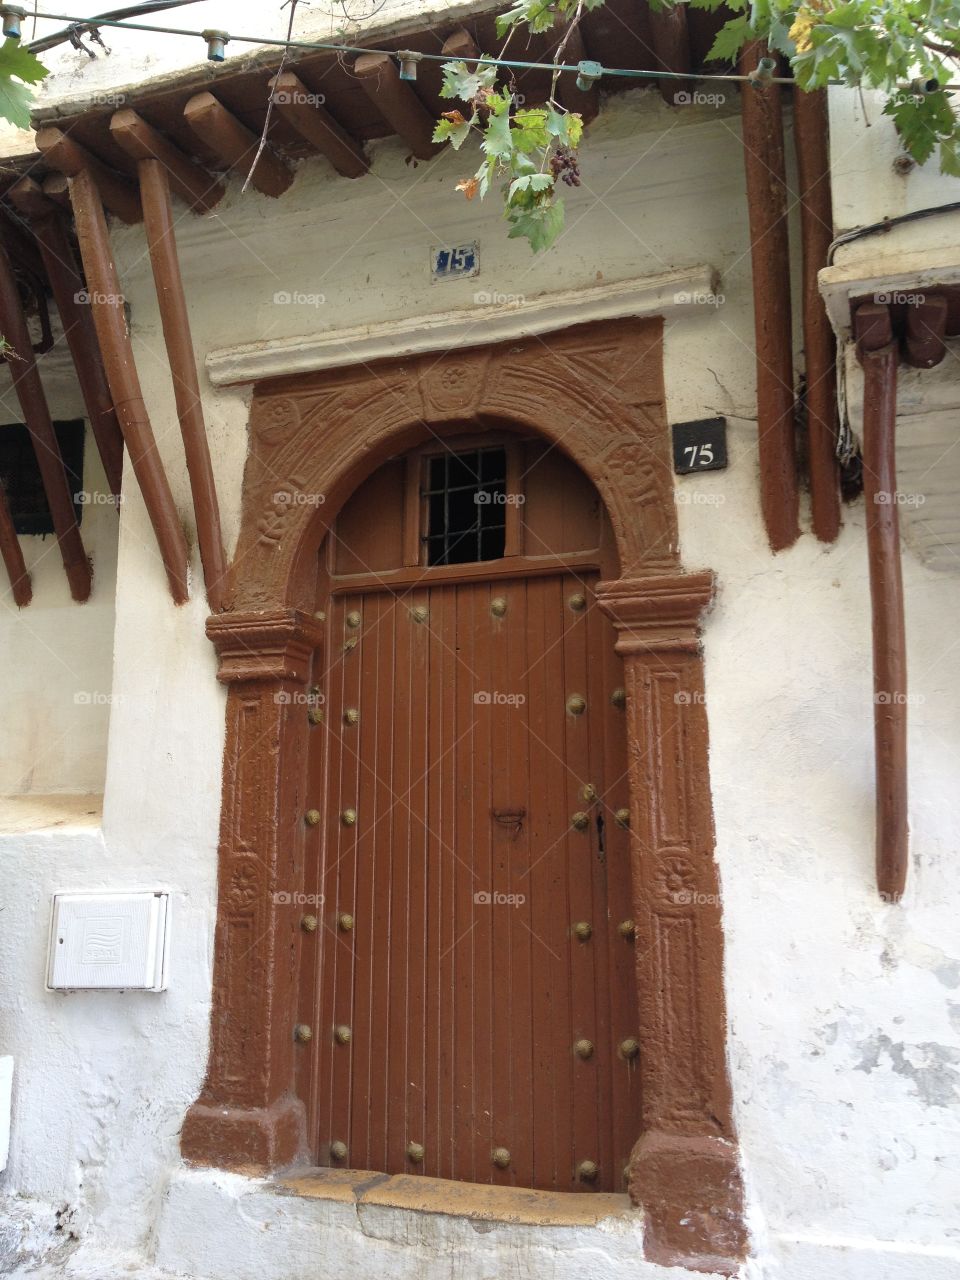 Antique entrance, Casbah of Algiers